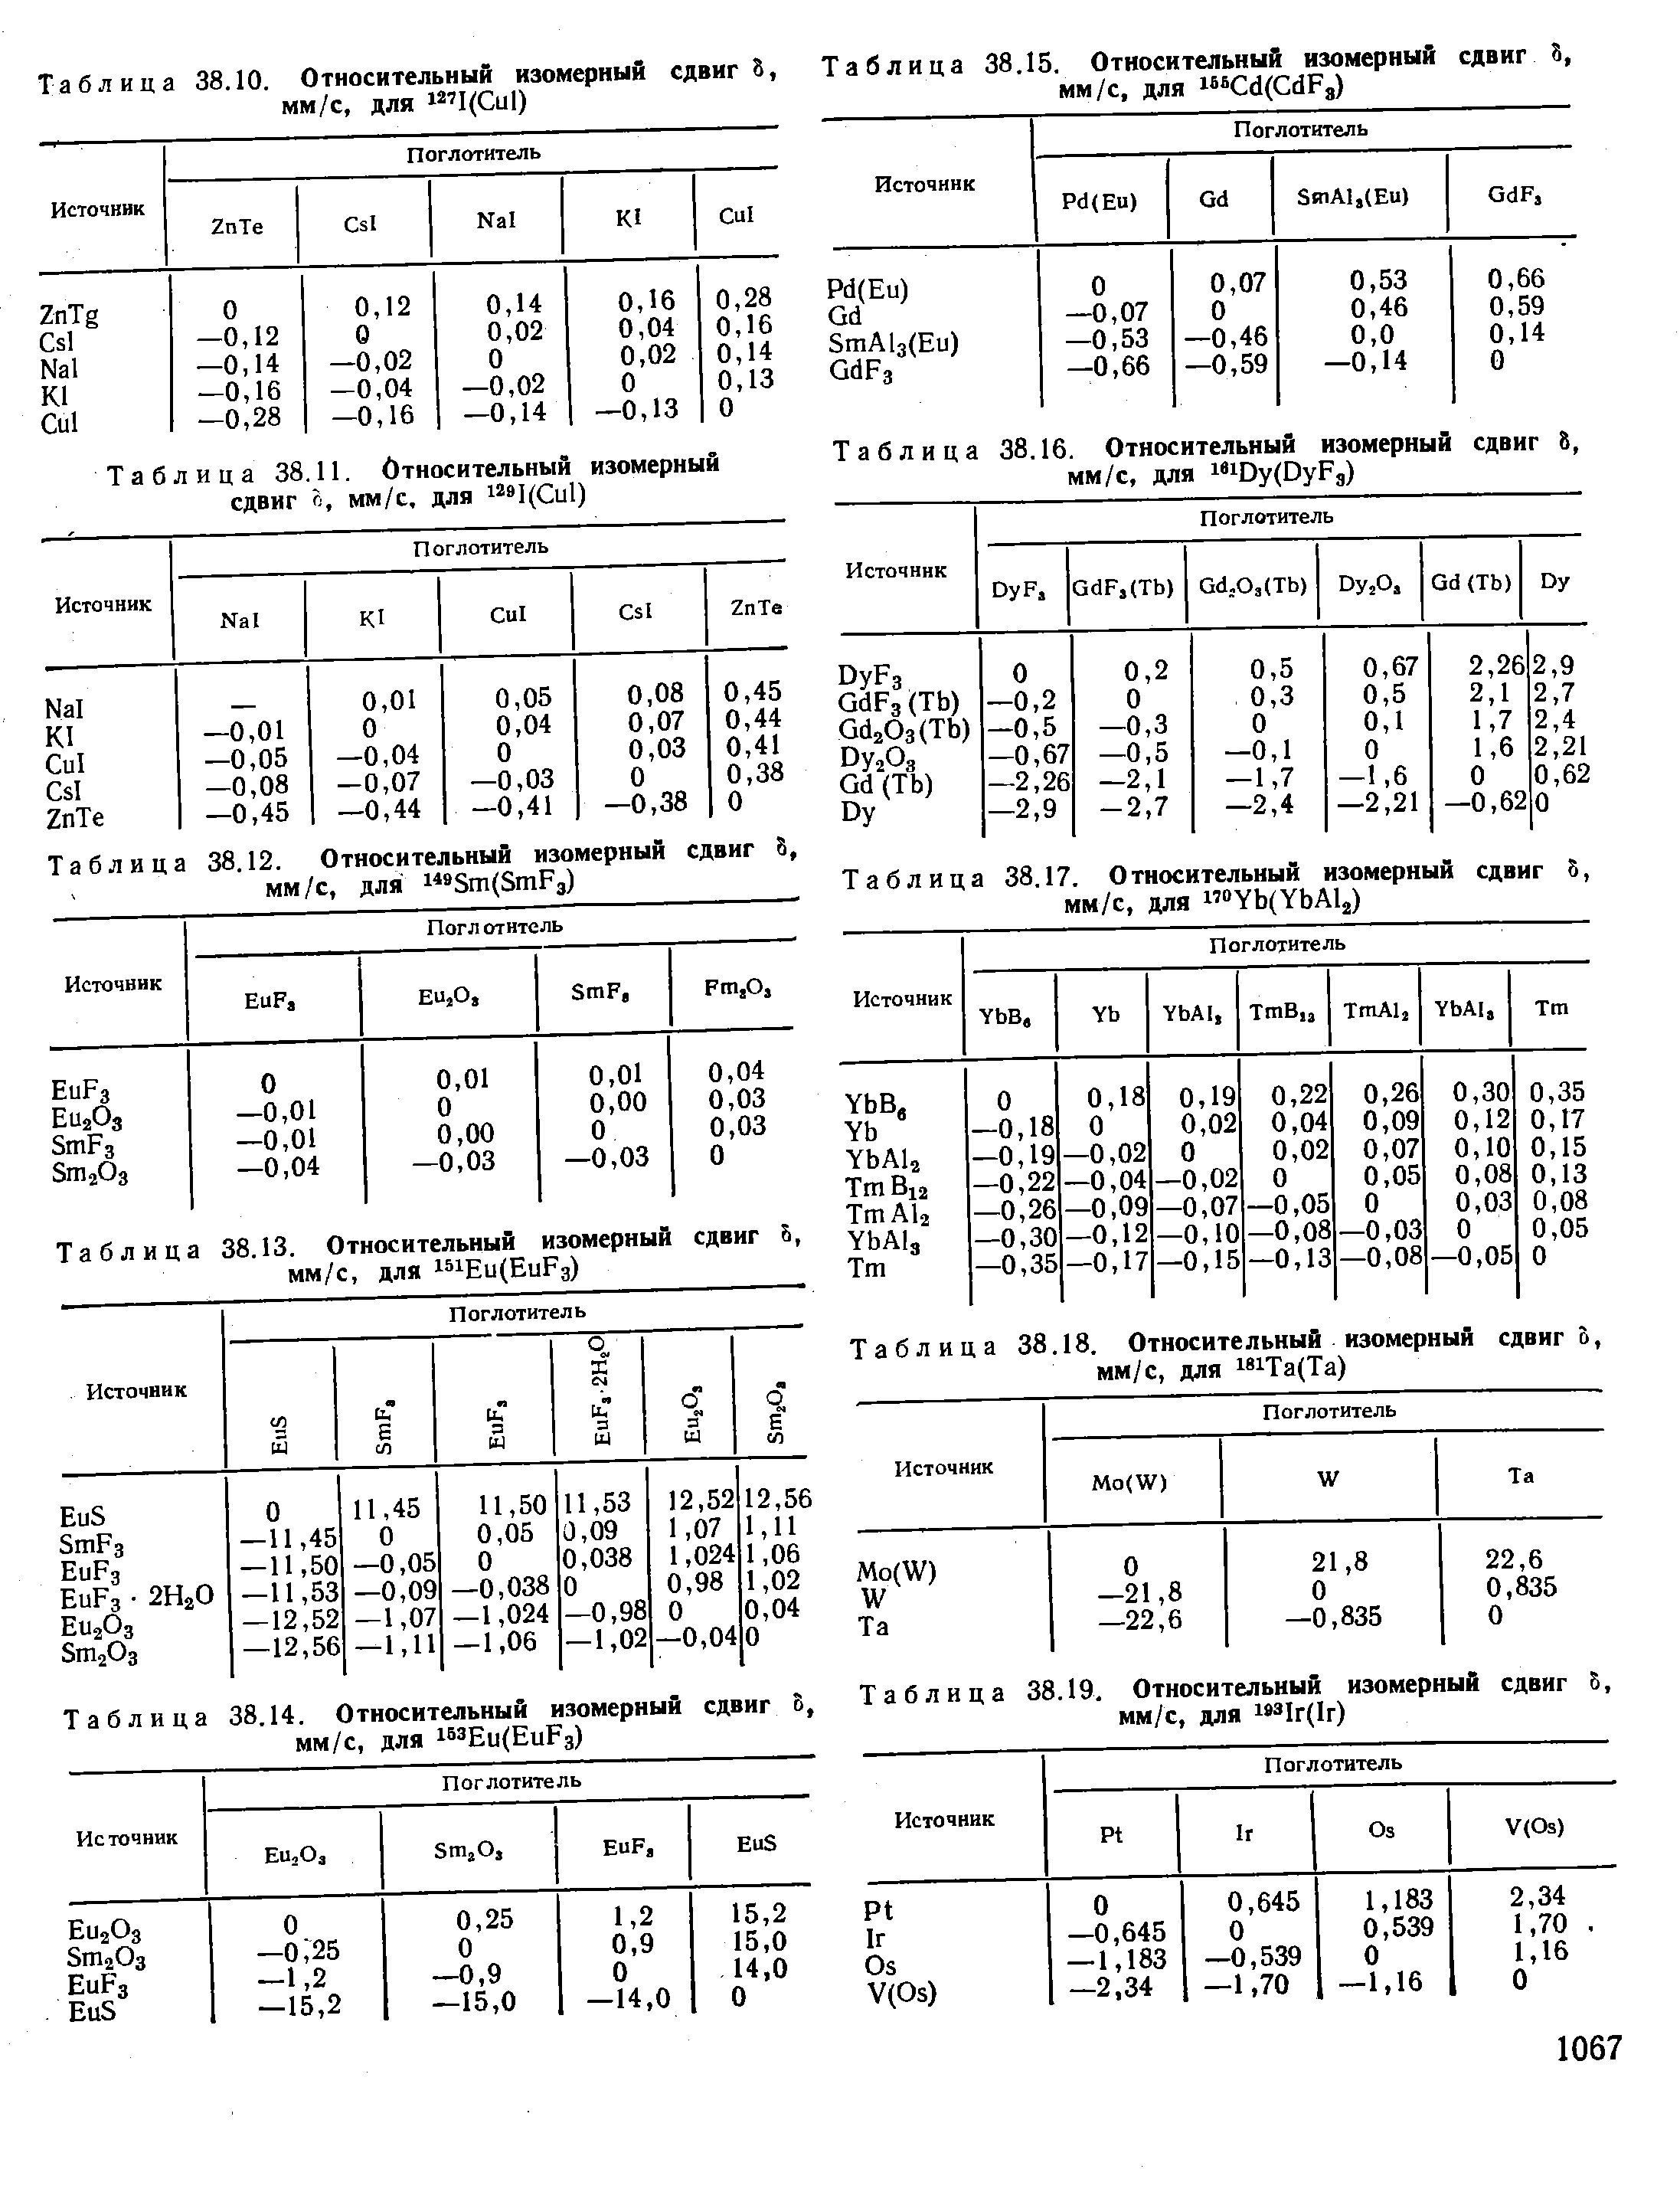 Таблица 38.19. Относительный изомерный сдвиг мм/с, для l 3Ir(Ir)
